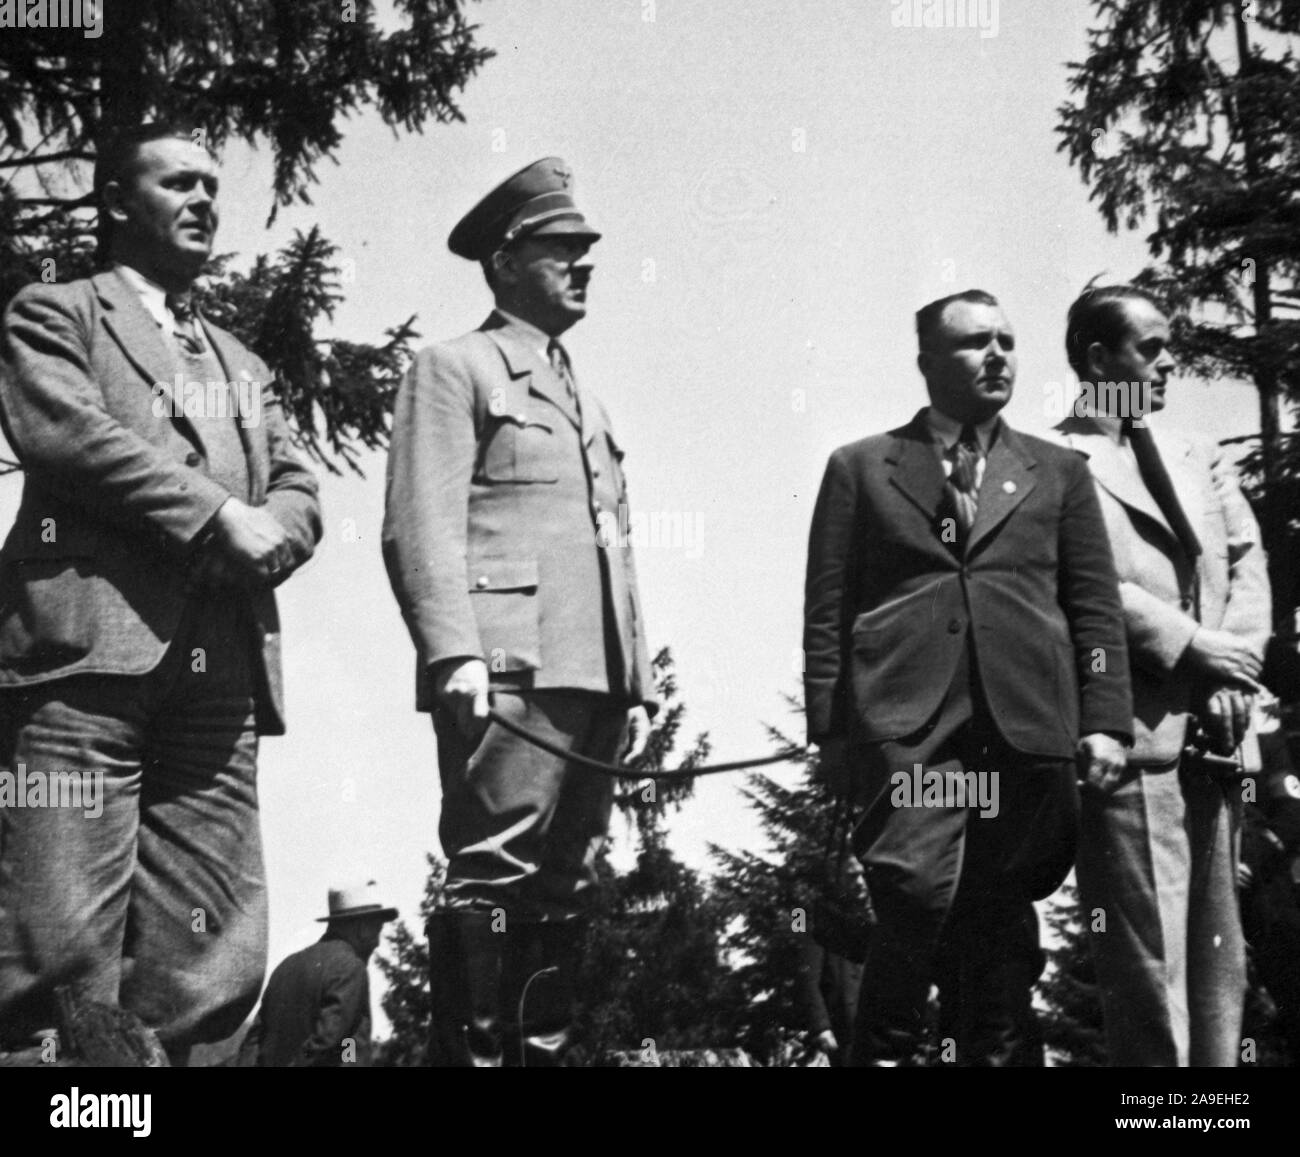 Eva Braun Collection (dvadvadaset) - Schatz, Bormann, Speer avec Adolf Hitler ca. fin des années 1930 Banque D'Images